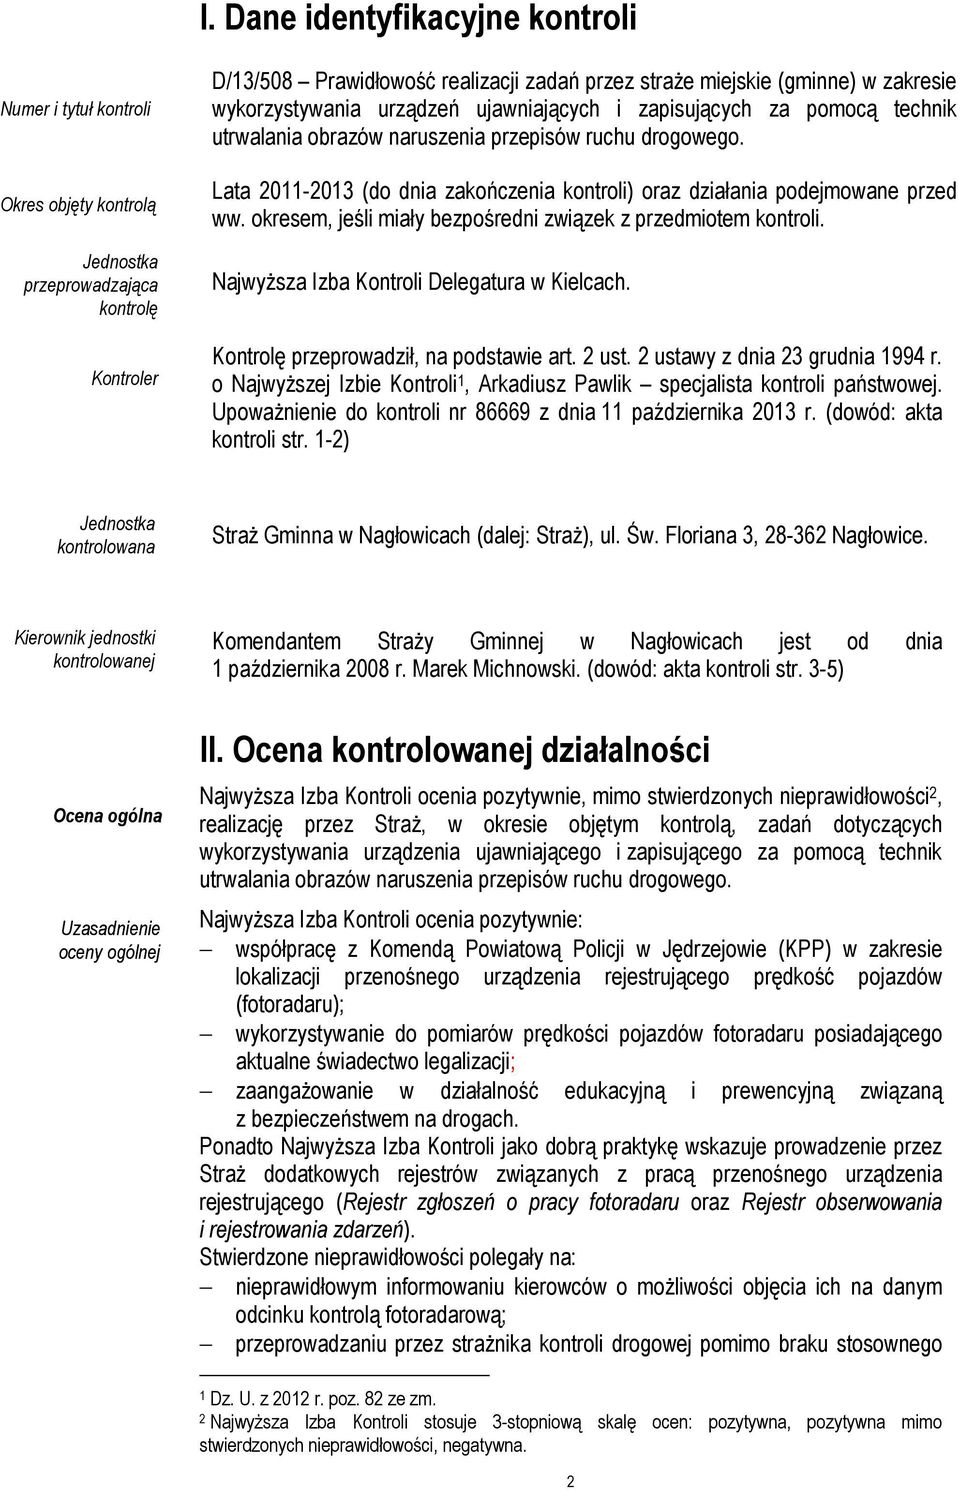 Lata 2011-2013 (do dnia zakończenia kontroli) oraz działania podejmowane przed ww. okresem, jeśli miały bezpośredni związek z przedmiotem kontroli. Najwyższa Izba Kontroli Delegatura w Kielcach.